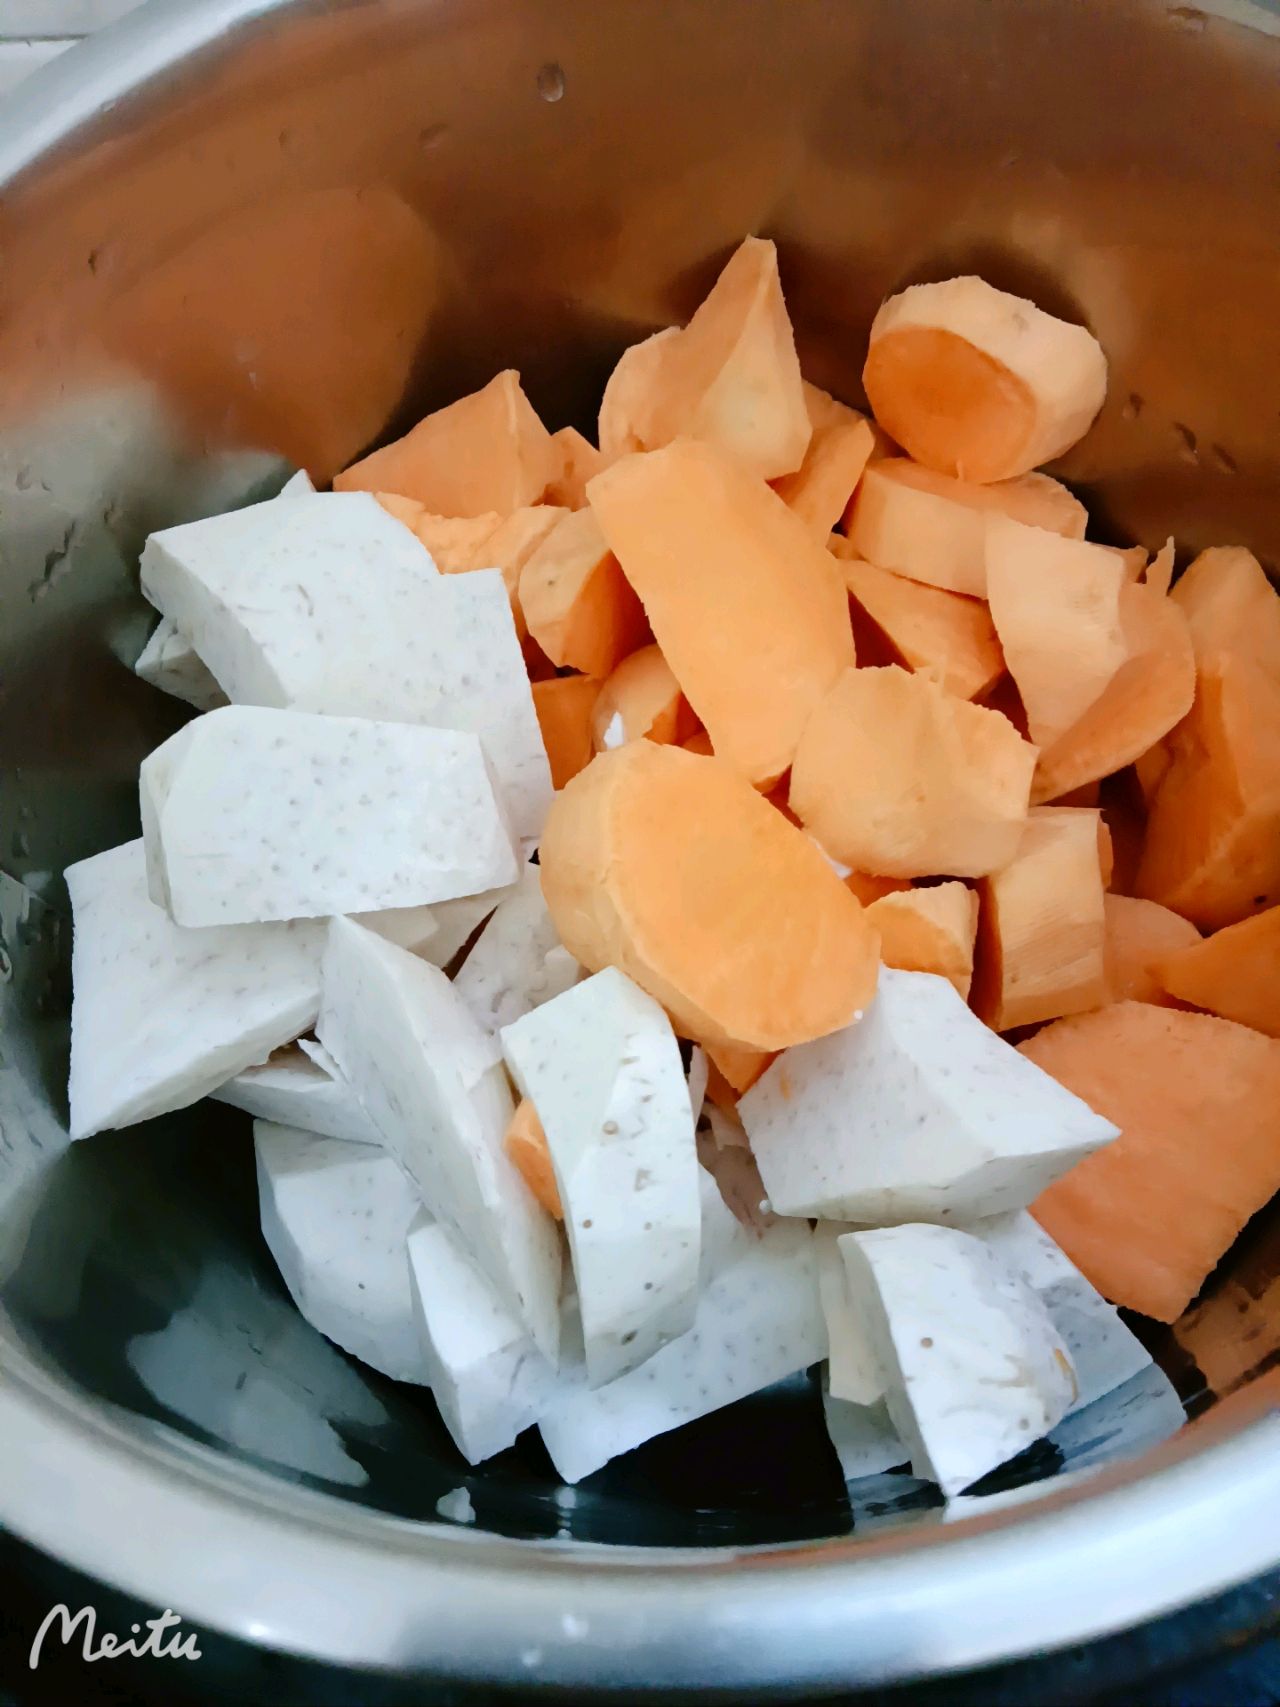 芋头红薯西米露,芋头红薯西米露的家常做法 - 美食杰芋头红薯西米露做法大全